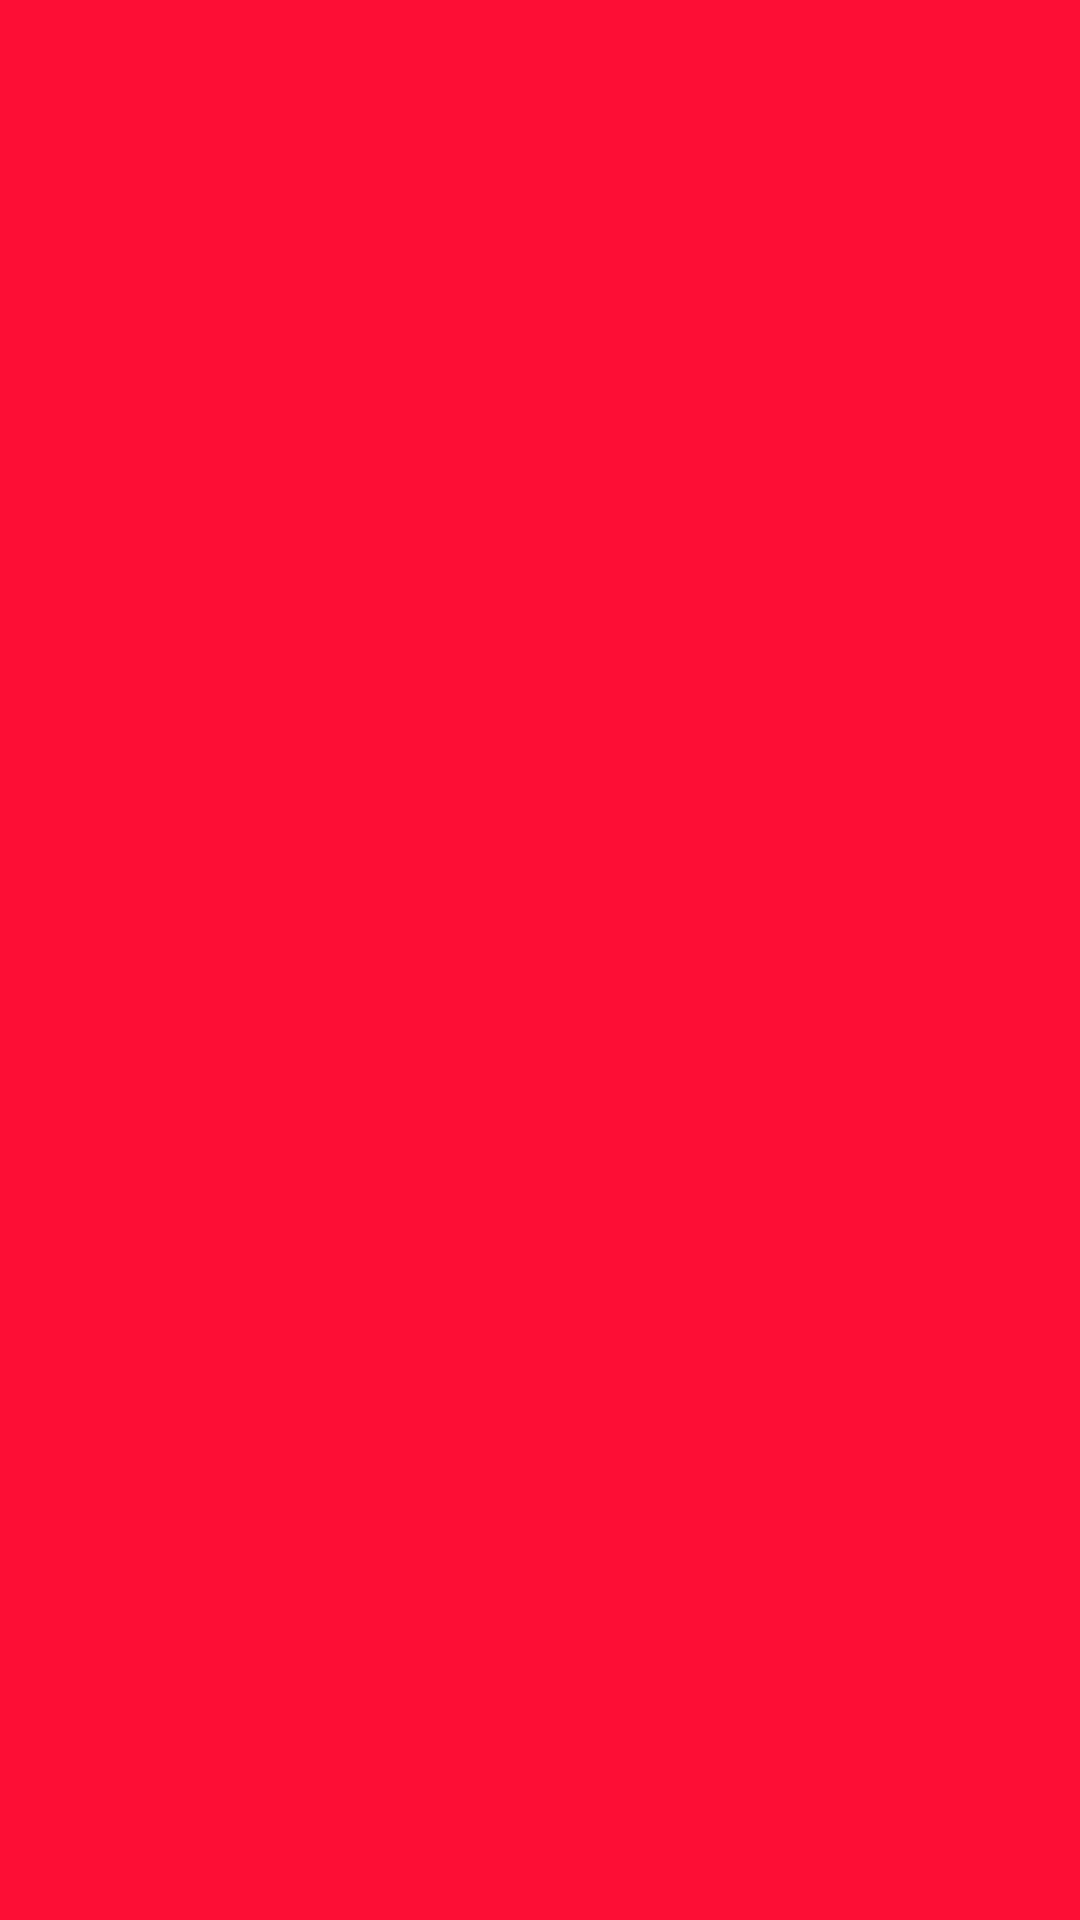 1080x1920 Scarlet Crayola Solid Color Background